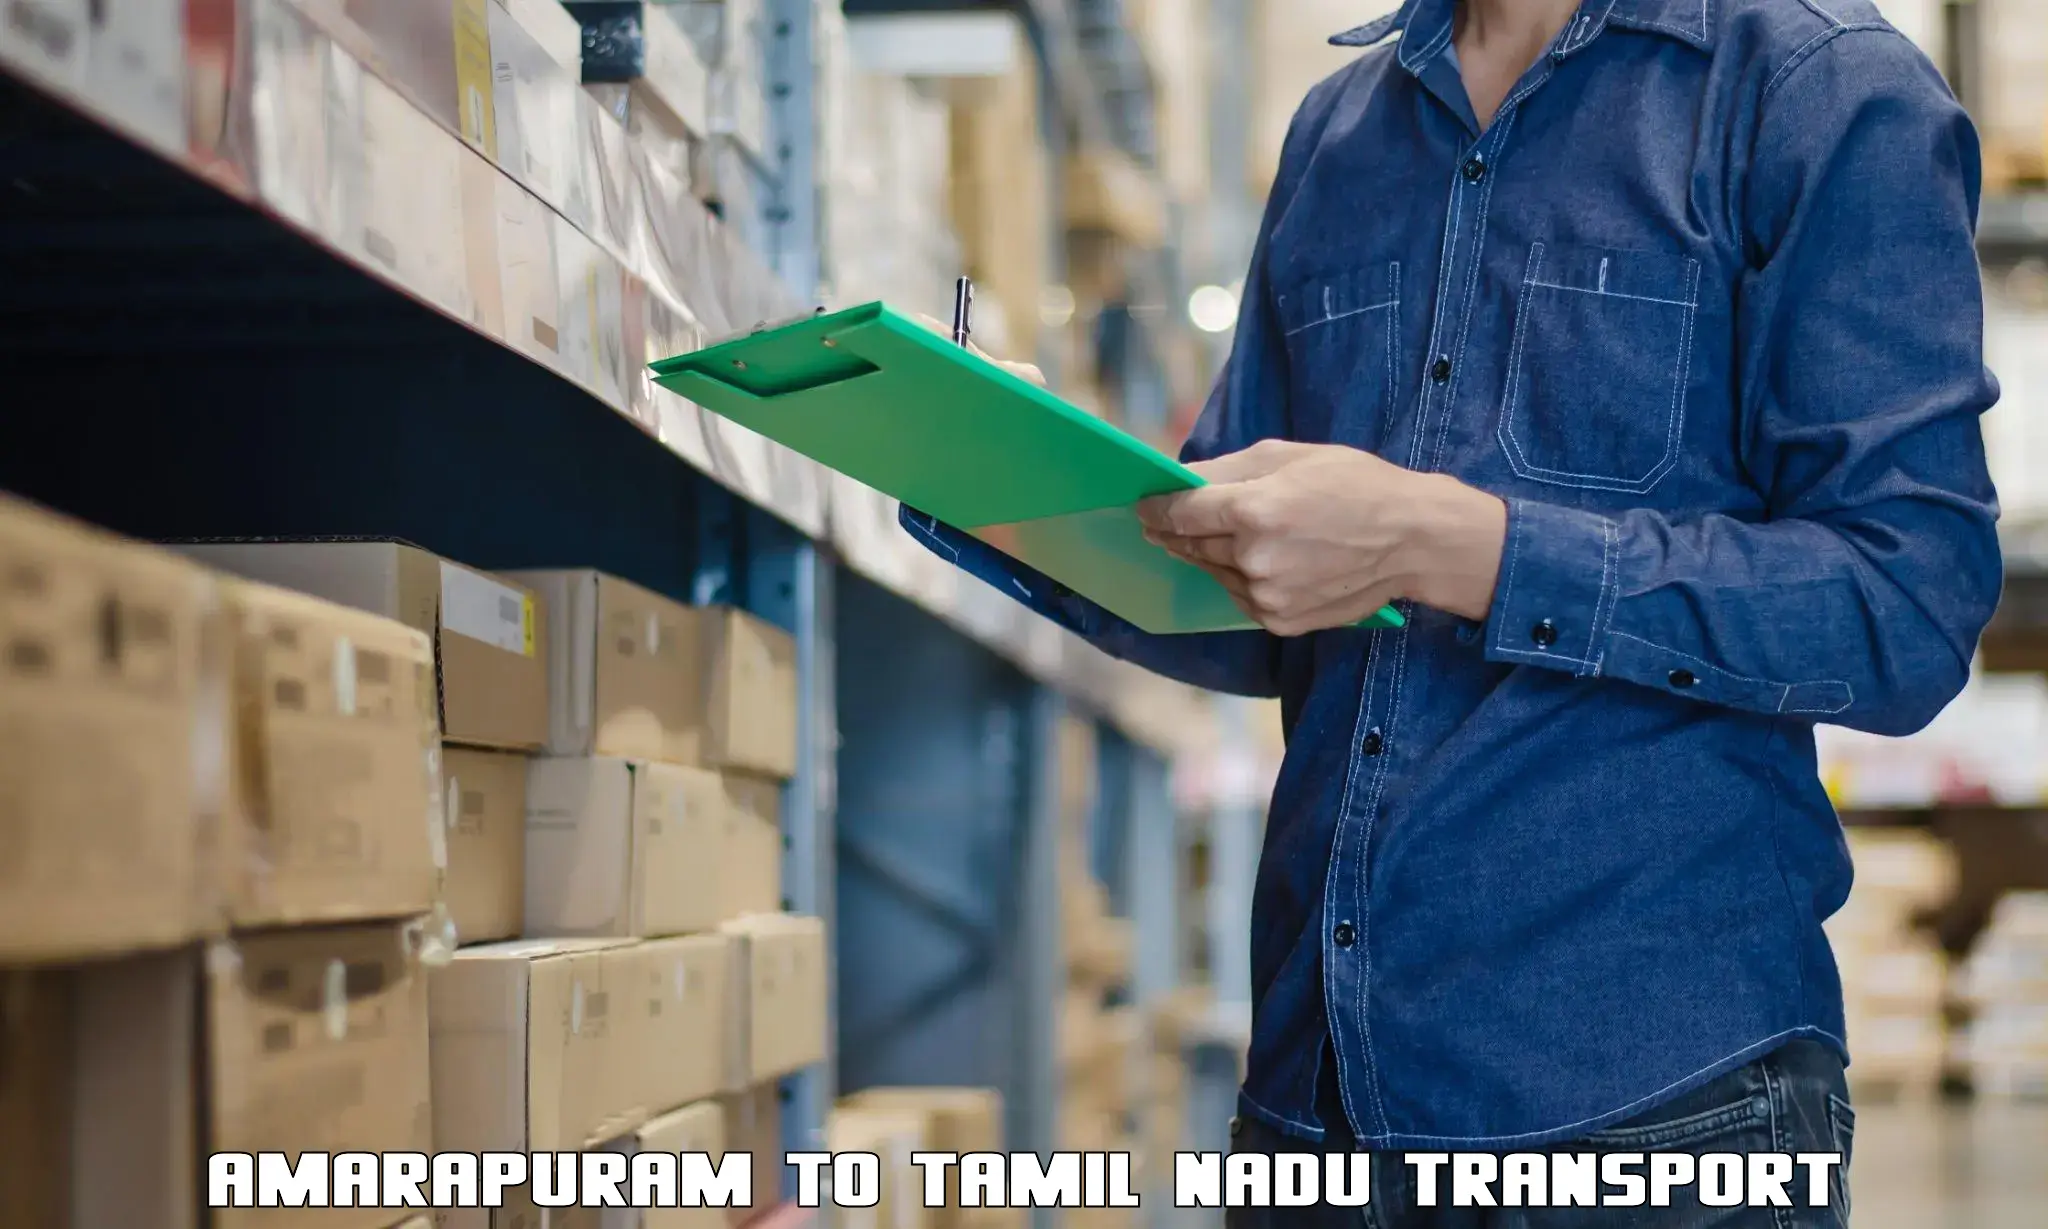 Parcel transport services Amarapuram to Coimbatore